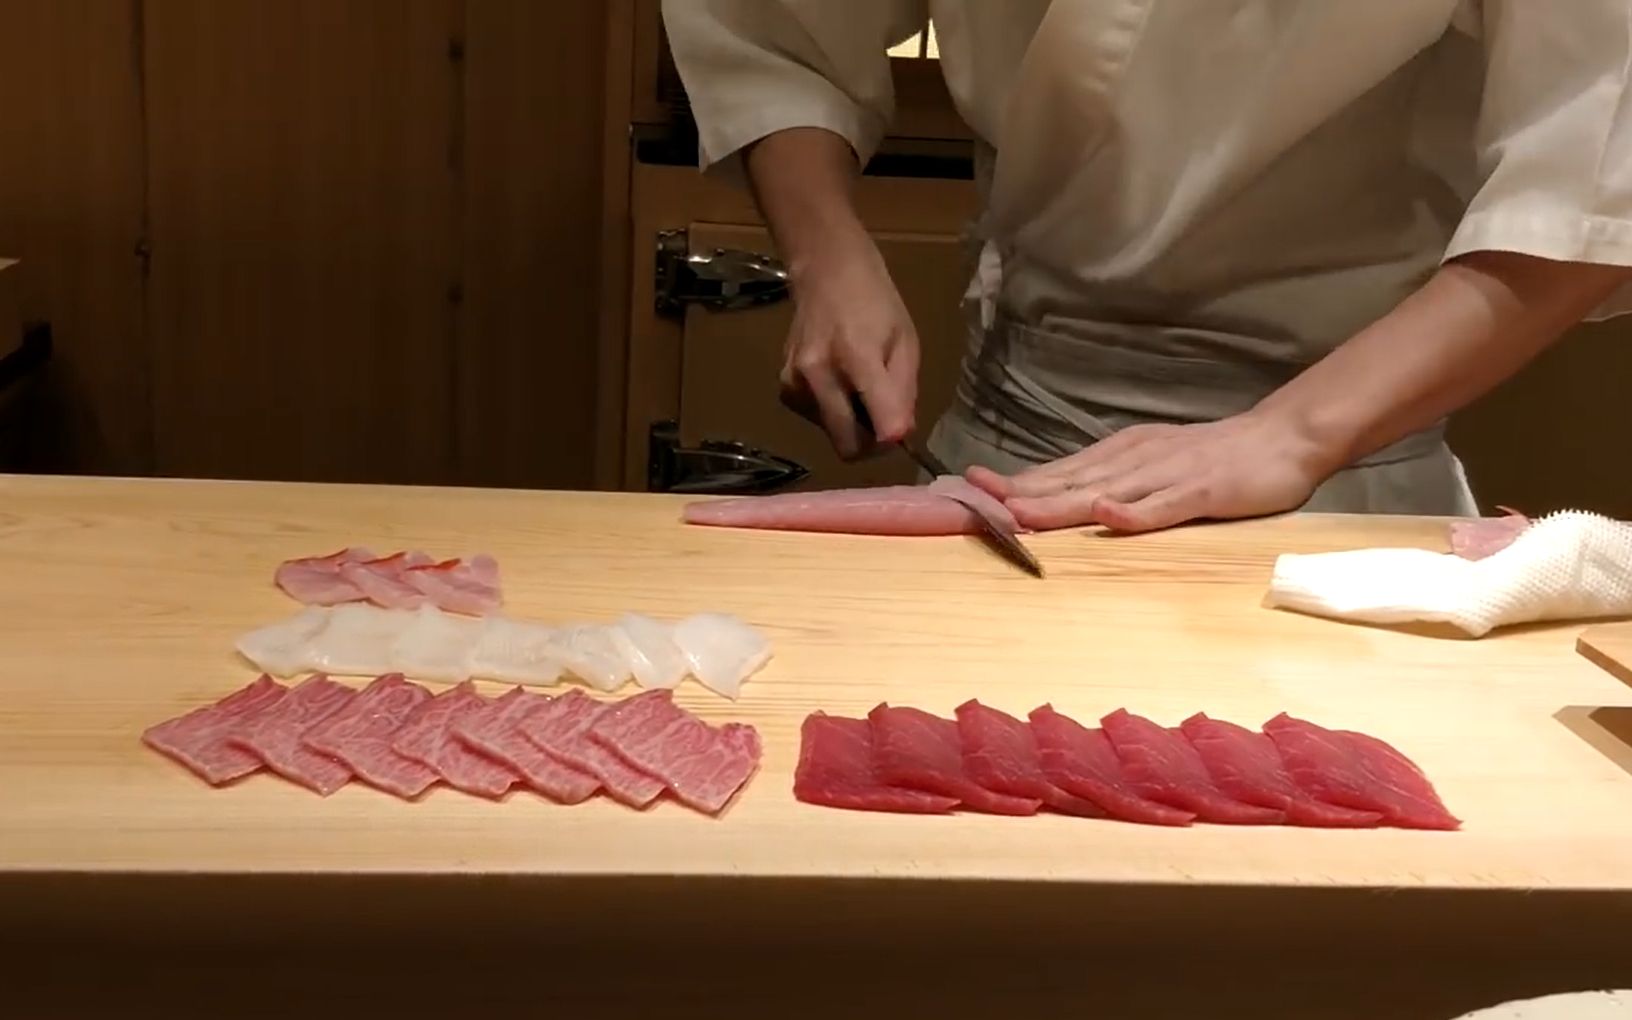 高端日本料理 - 日本米其林三星大厨Kobayashi（小林）现场奉献令人惊叹的美味日料！